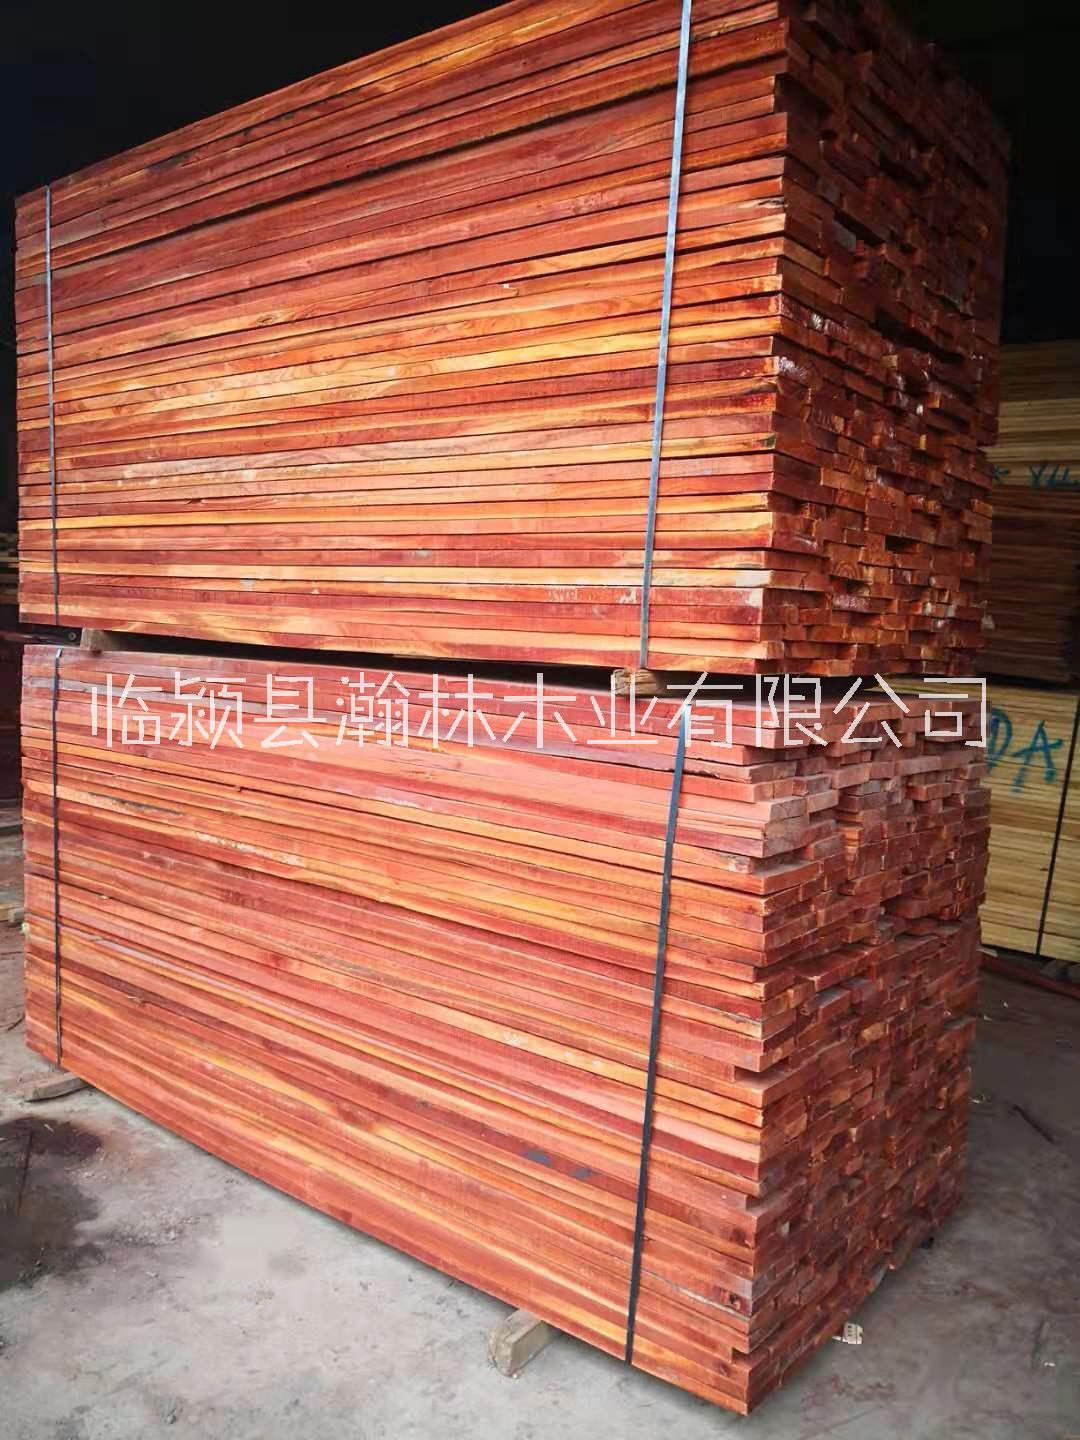 实木红椿木板材 蒸汽烘干热板材 压定型红椿木 实木家具材料 蒸汽烘干热红椿木板材